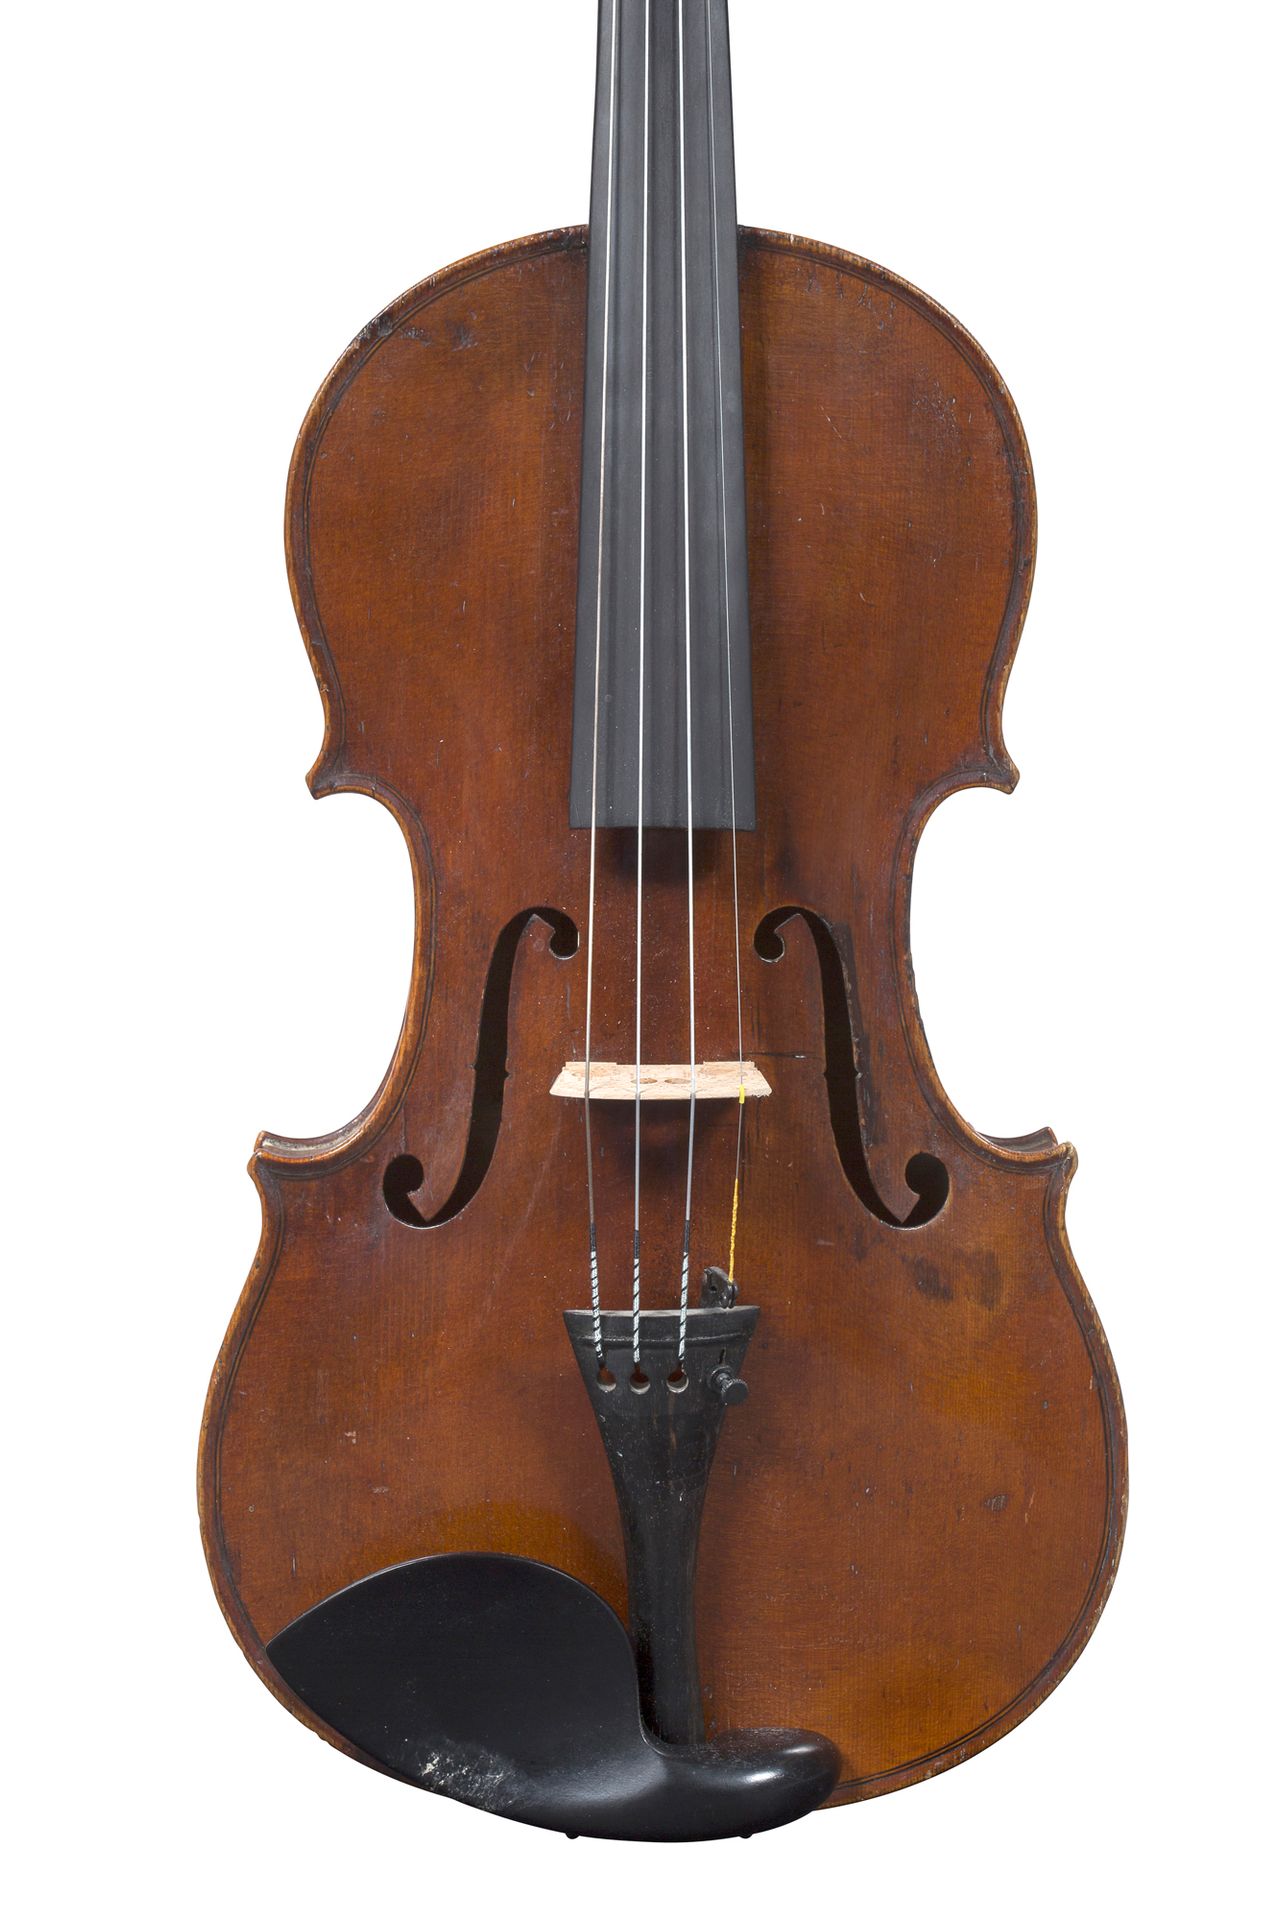 Null Geige von Henry Thouvenel
Hergestellt in Mirecourt XIX.
Trägt ein originale&hellip;